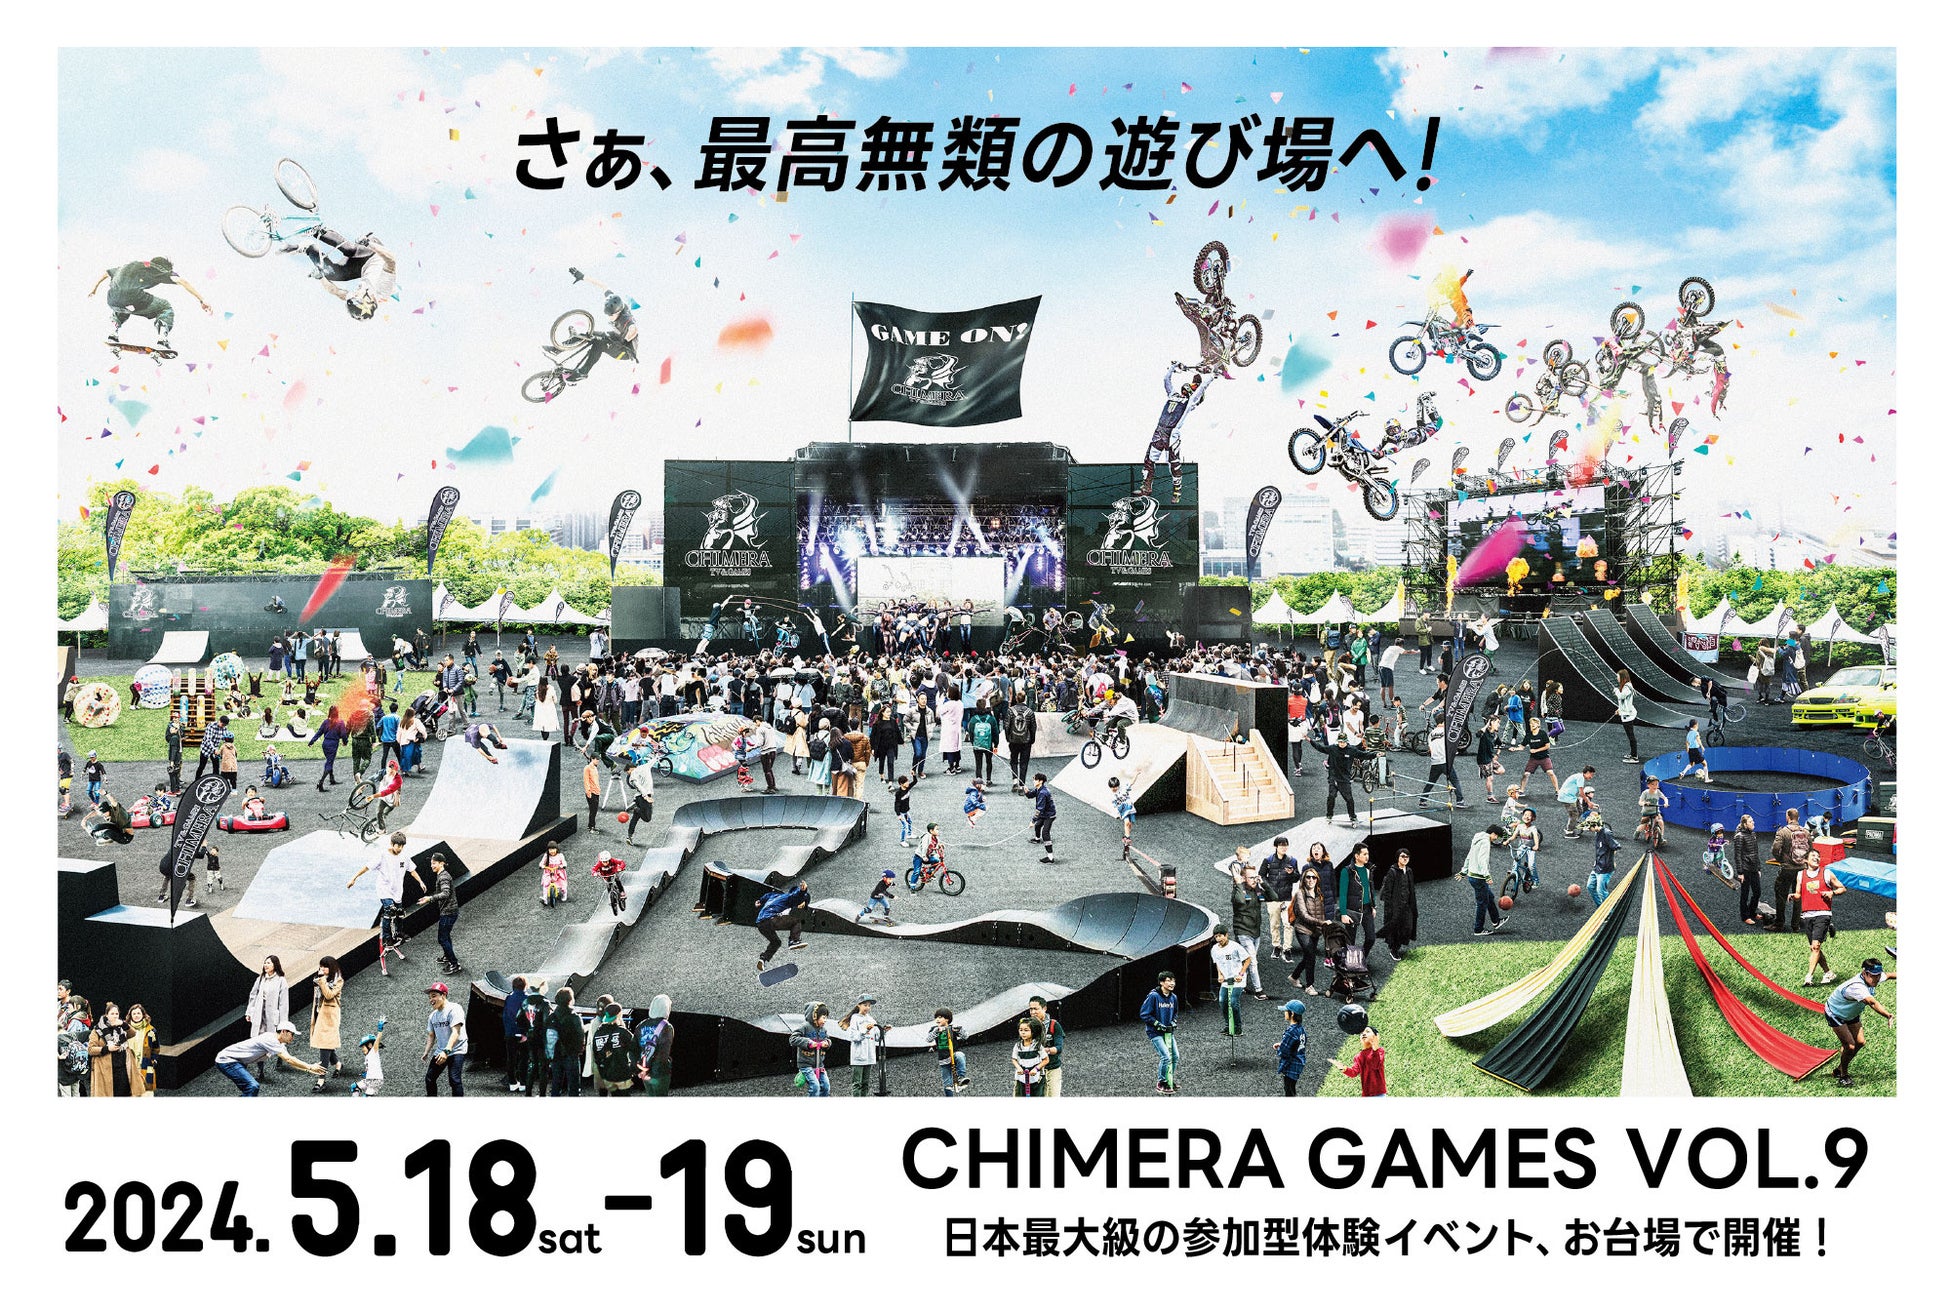 三井住友DSアセットマネジメント株式会社は体験型エンターテインメントイベント 『CHIMERA GAMES VOL.9』 に協賛いたします